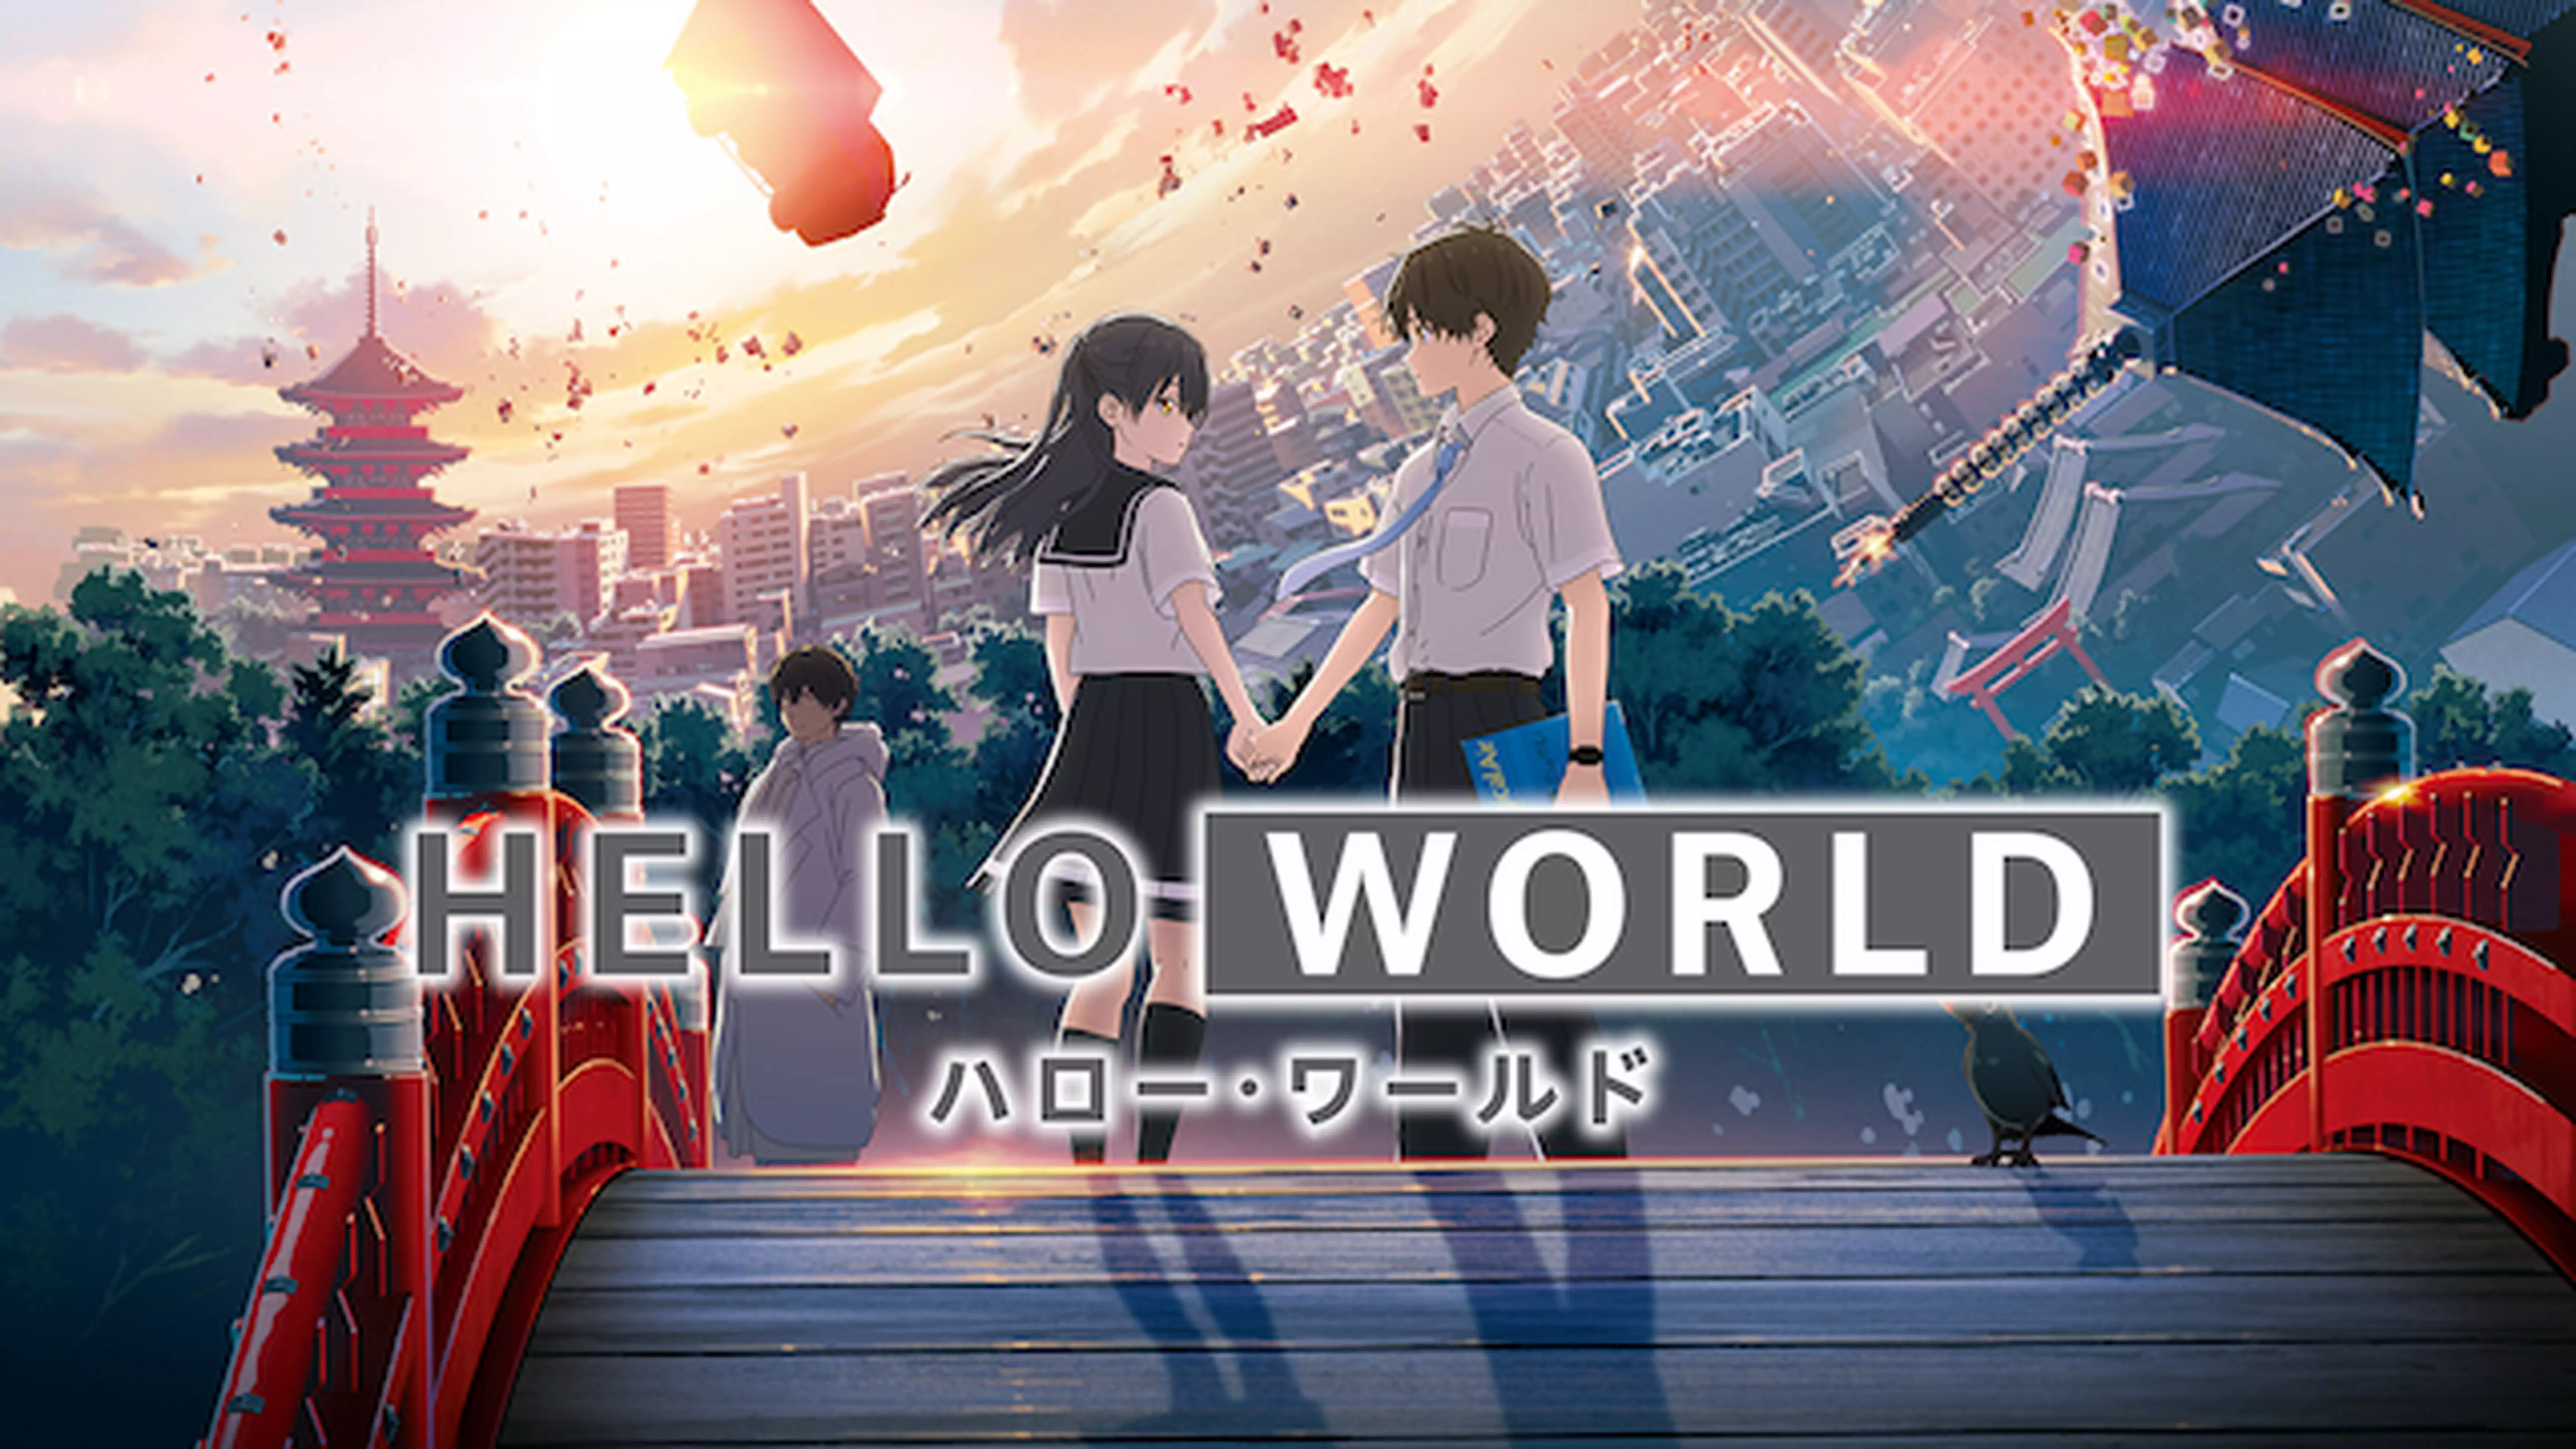 アニメ映画 Hello World あらすじネタバレ 結末に感動 わかたけトピックス